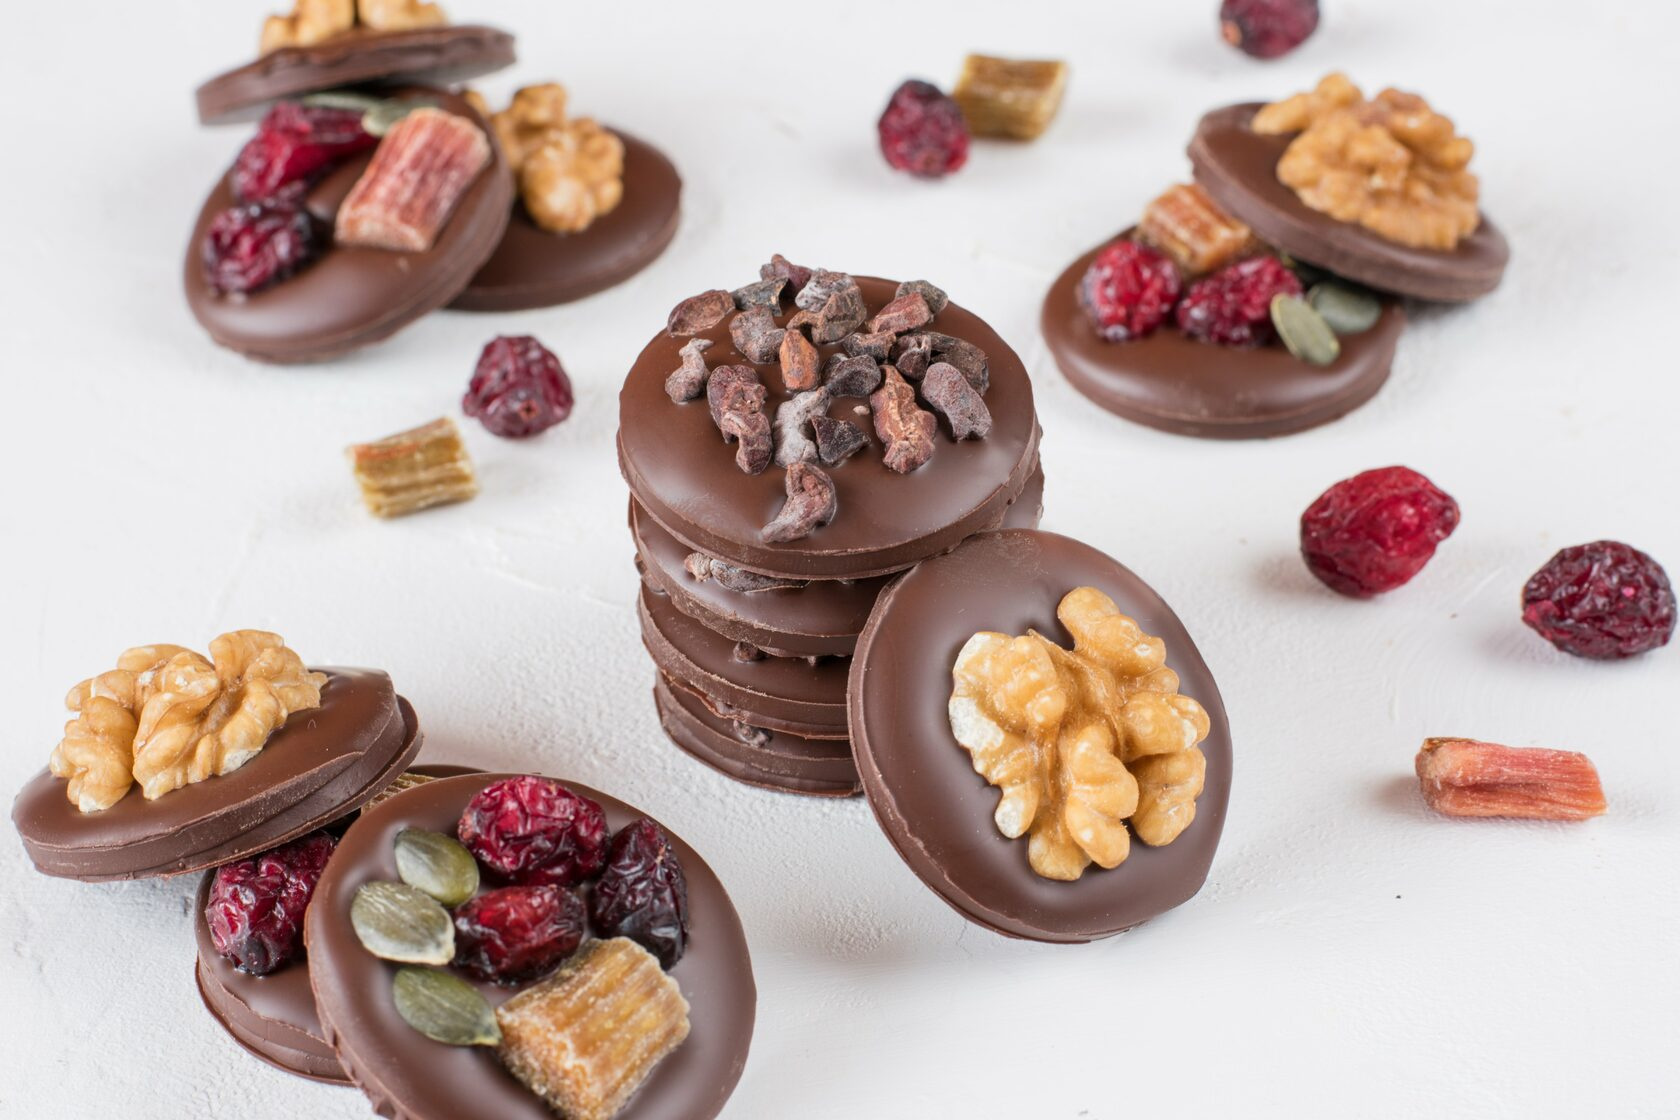 Медианты — это маленькие плитки шоколада, украшенные орехами, фруктами или цукатами